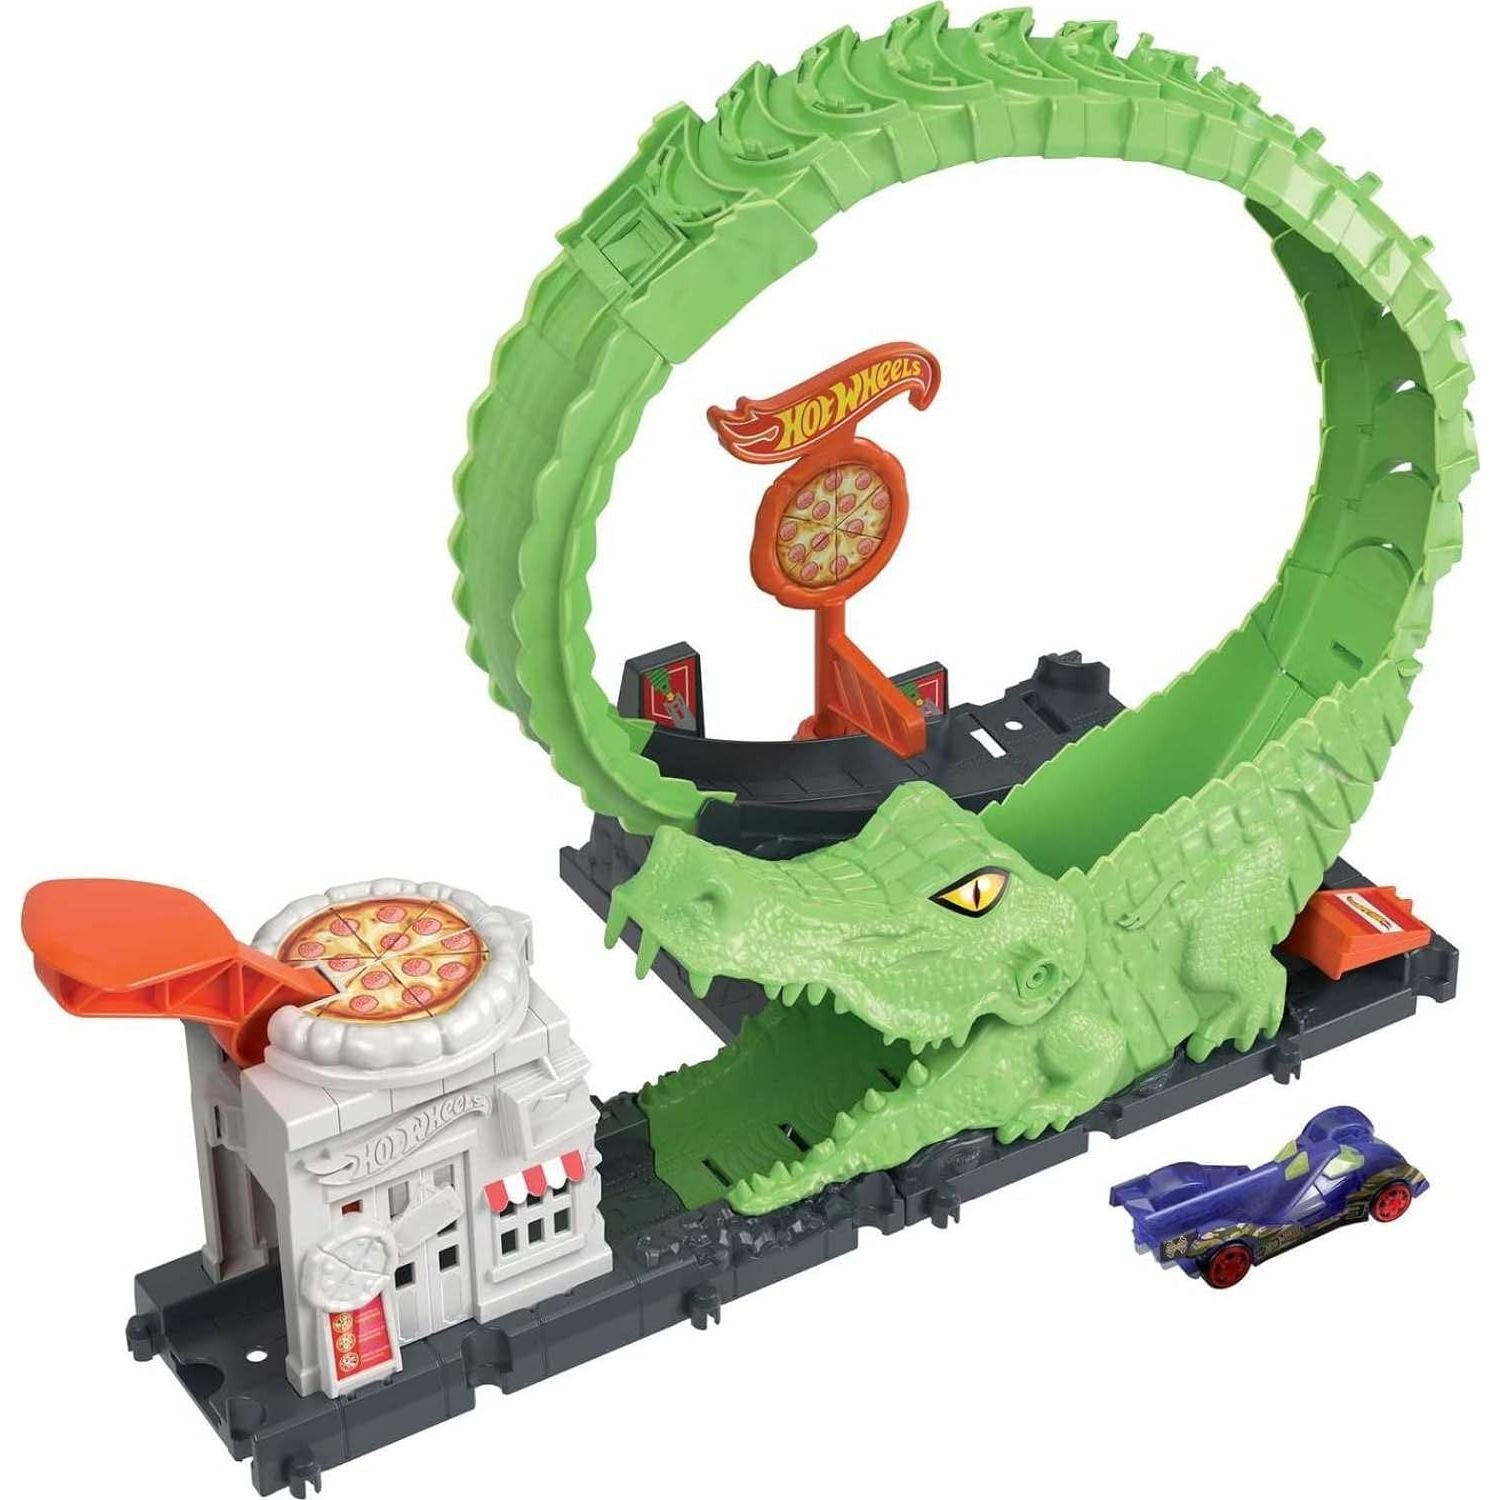 مجموعة مسار سيارة لعبة هوت ويلز، مجموعة ألعاب هجوم حلقة التمساح في مكان البيتزا مع سيارة بمقياس 1؛64، تتصل بمجموعات أخرى